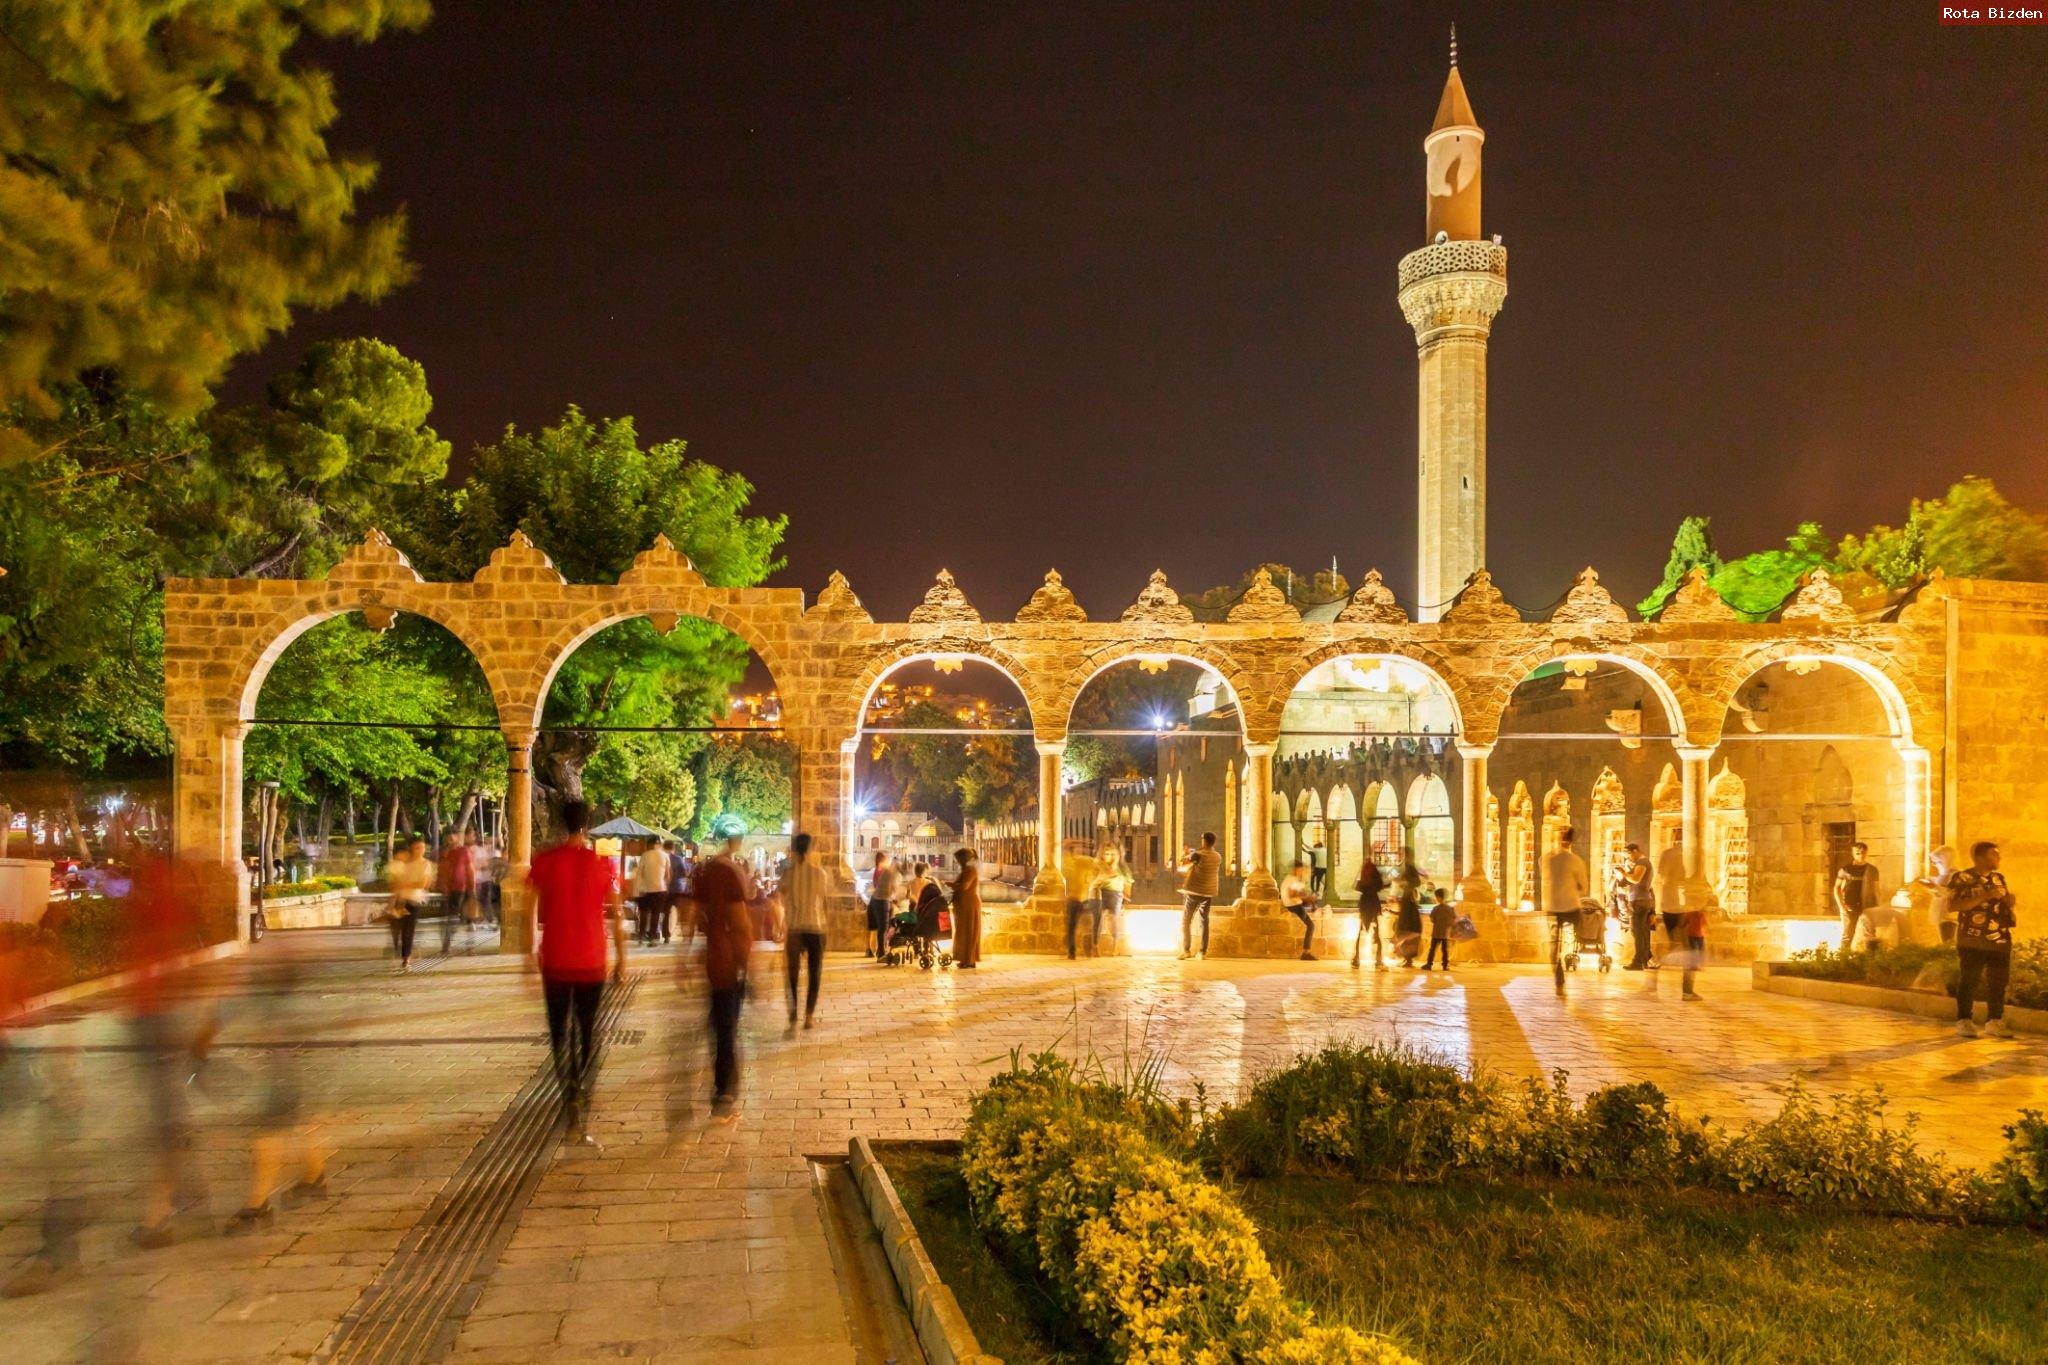 Ş.Urfa - Adıyaman (Nemrut) - Mardin - Diyarbakır